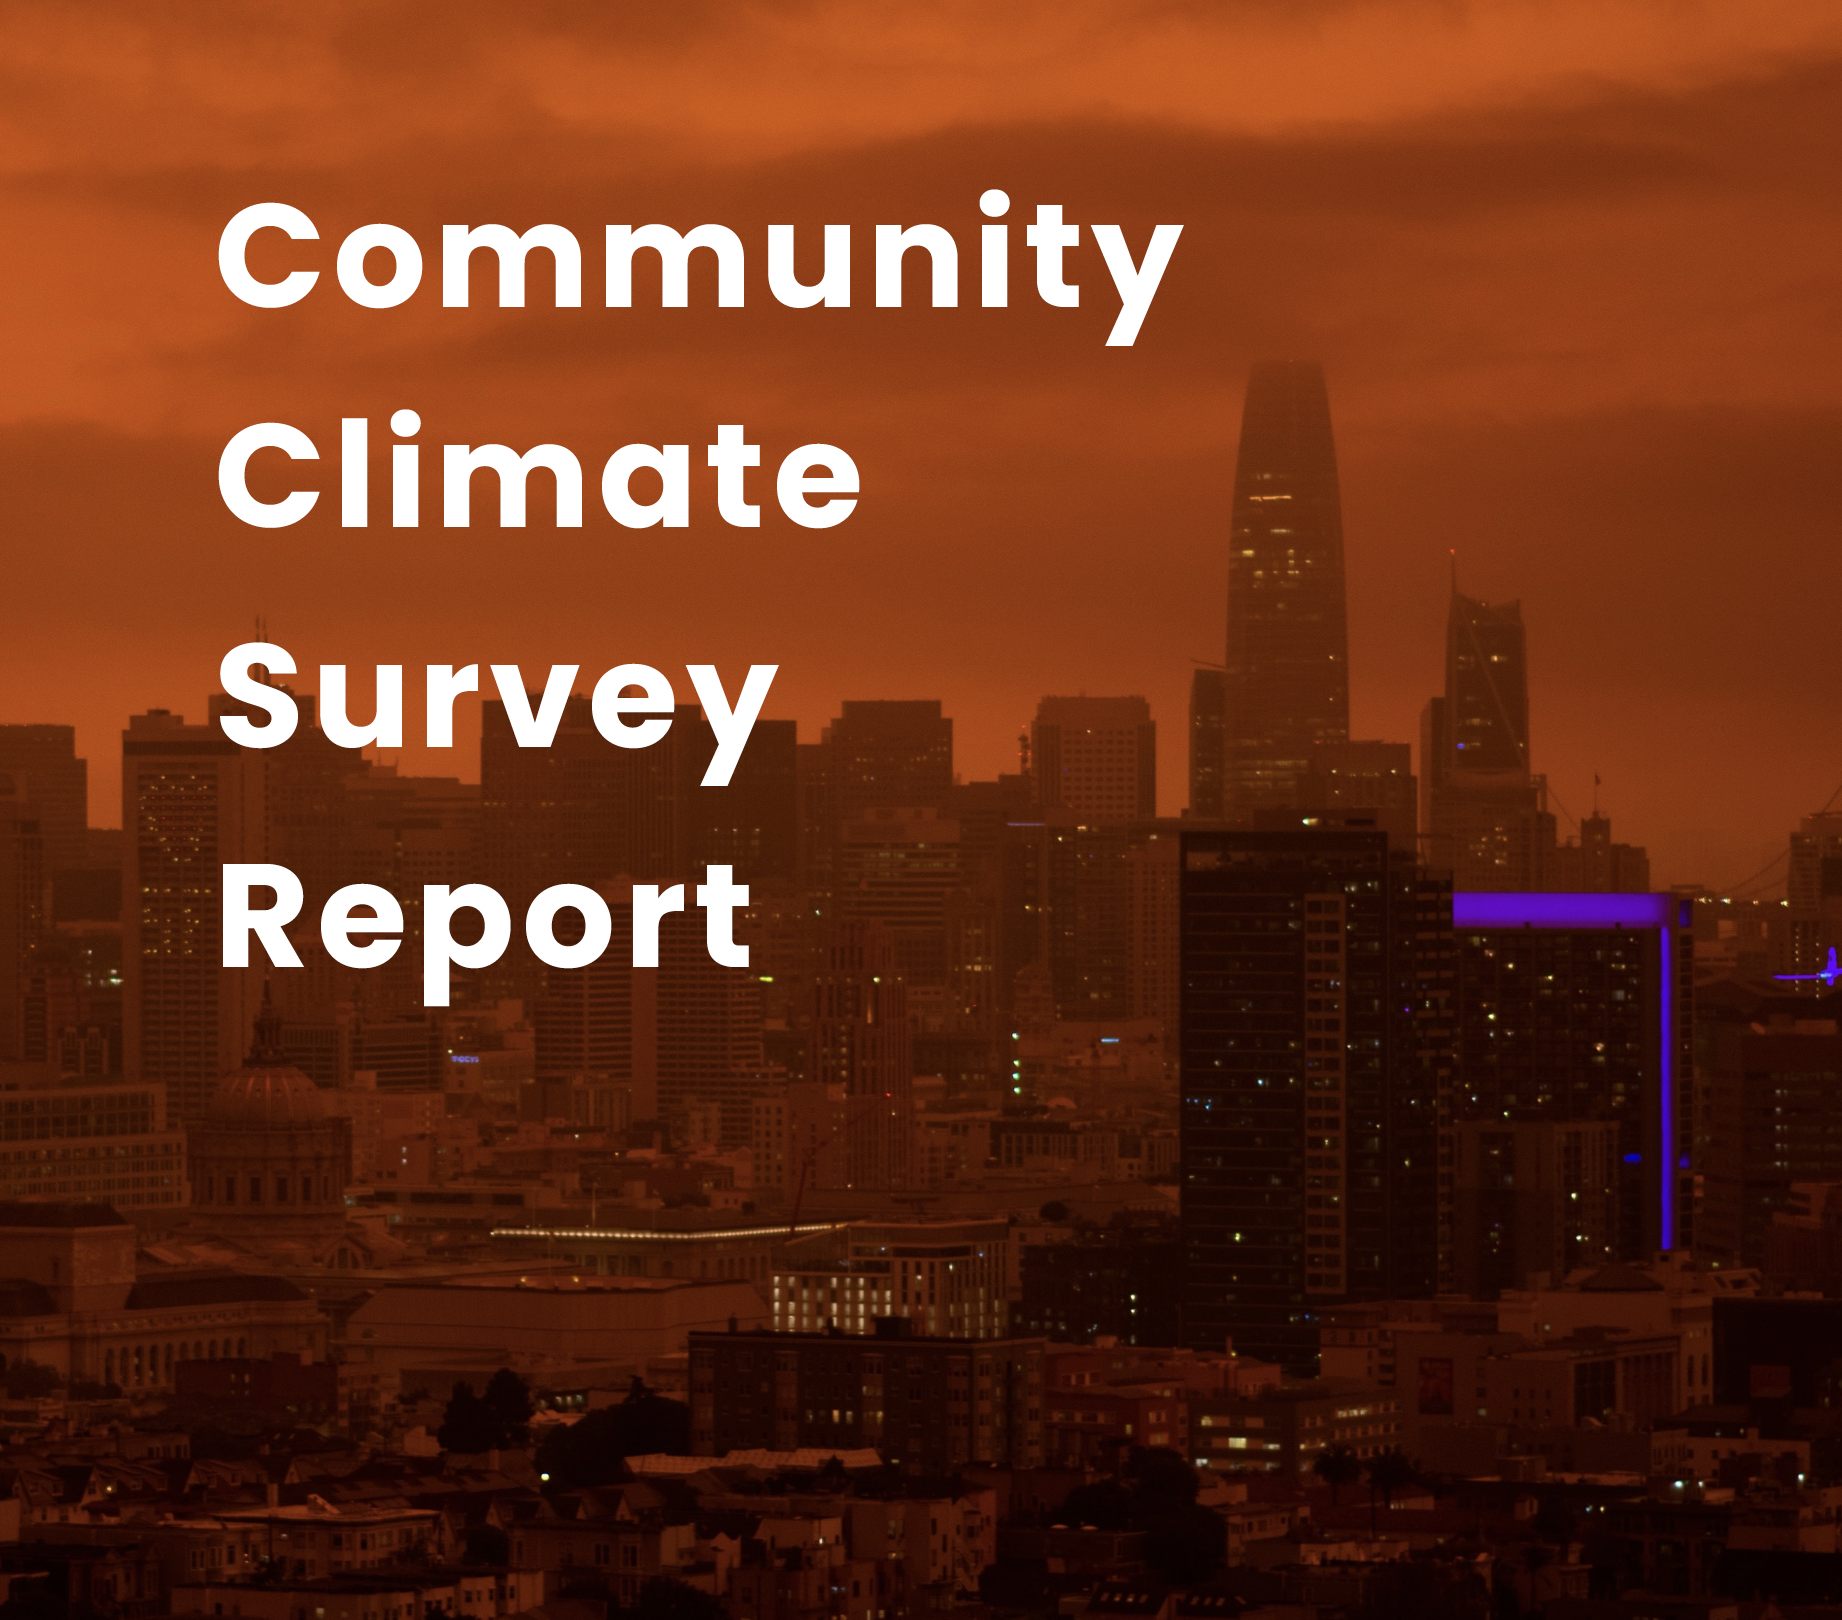 Community Climate Survey Report